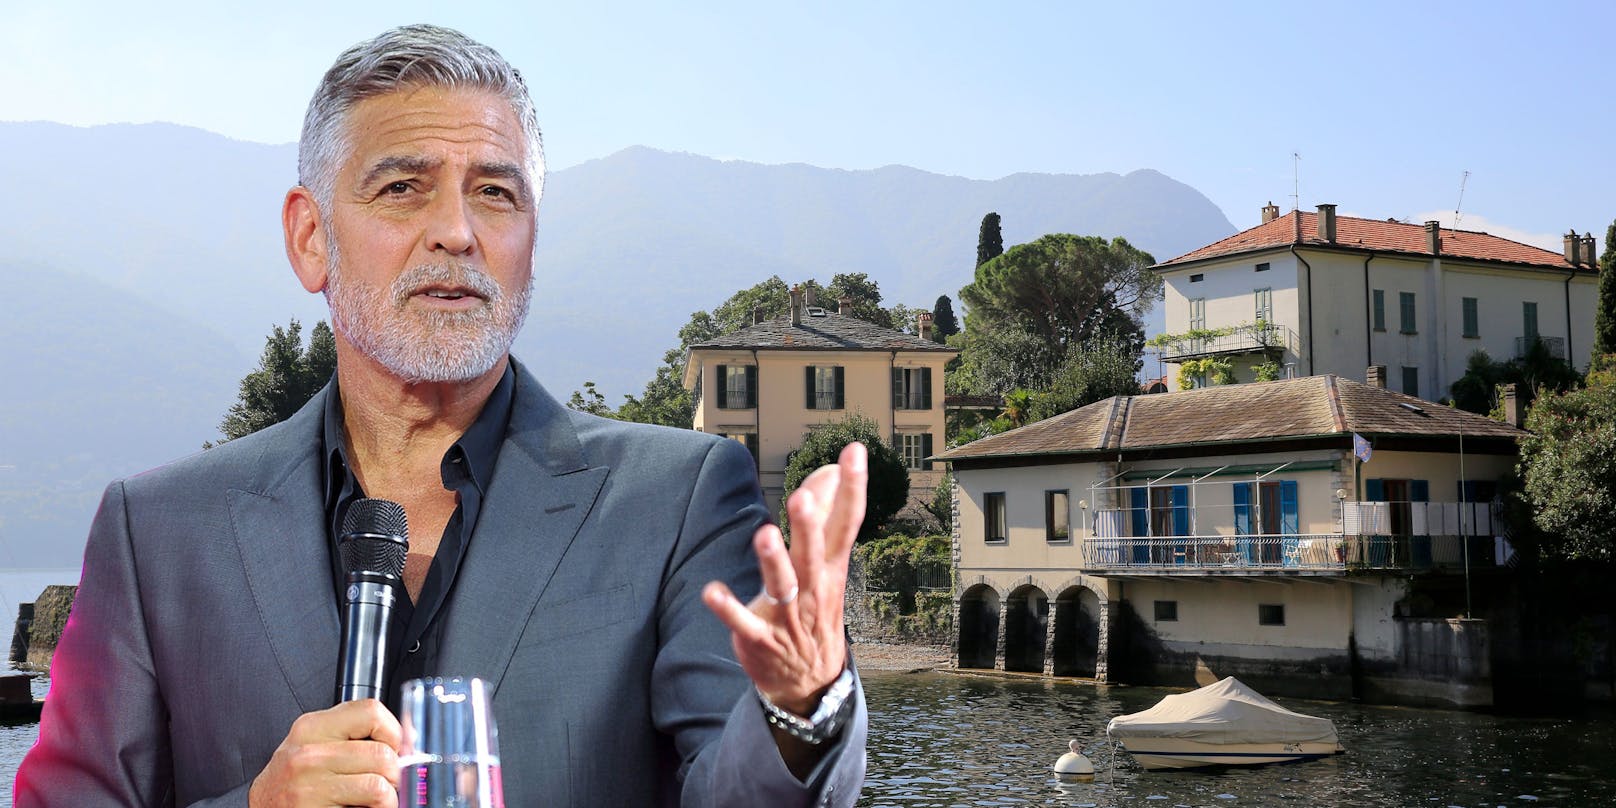 Villa-Verkauf: Jetzt spricht George Clooney Klartext